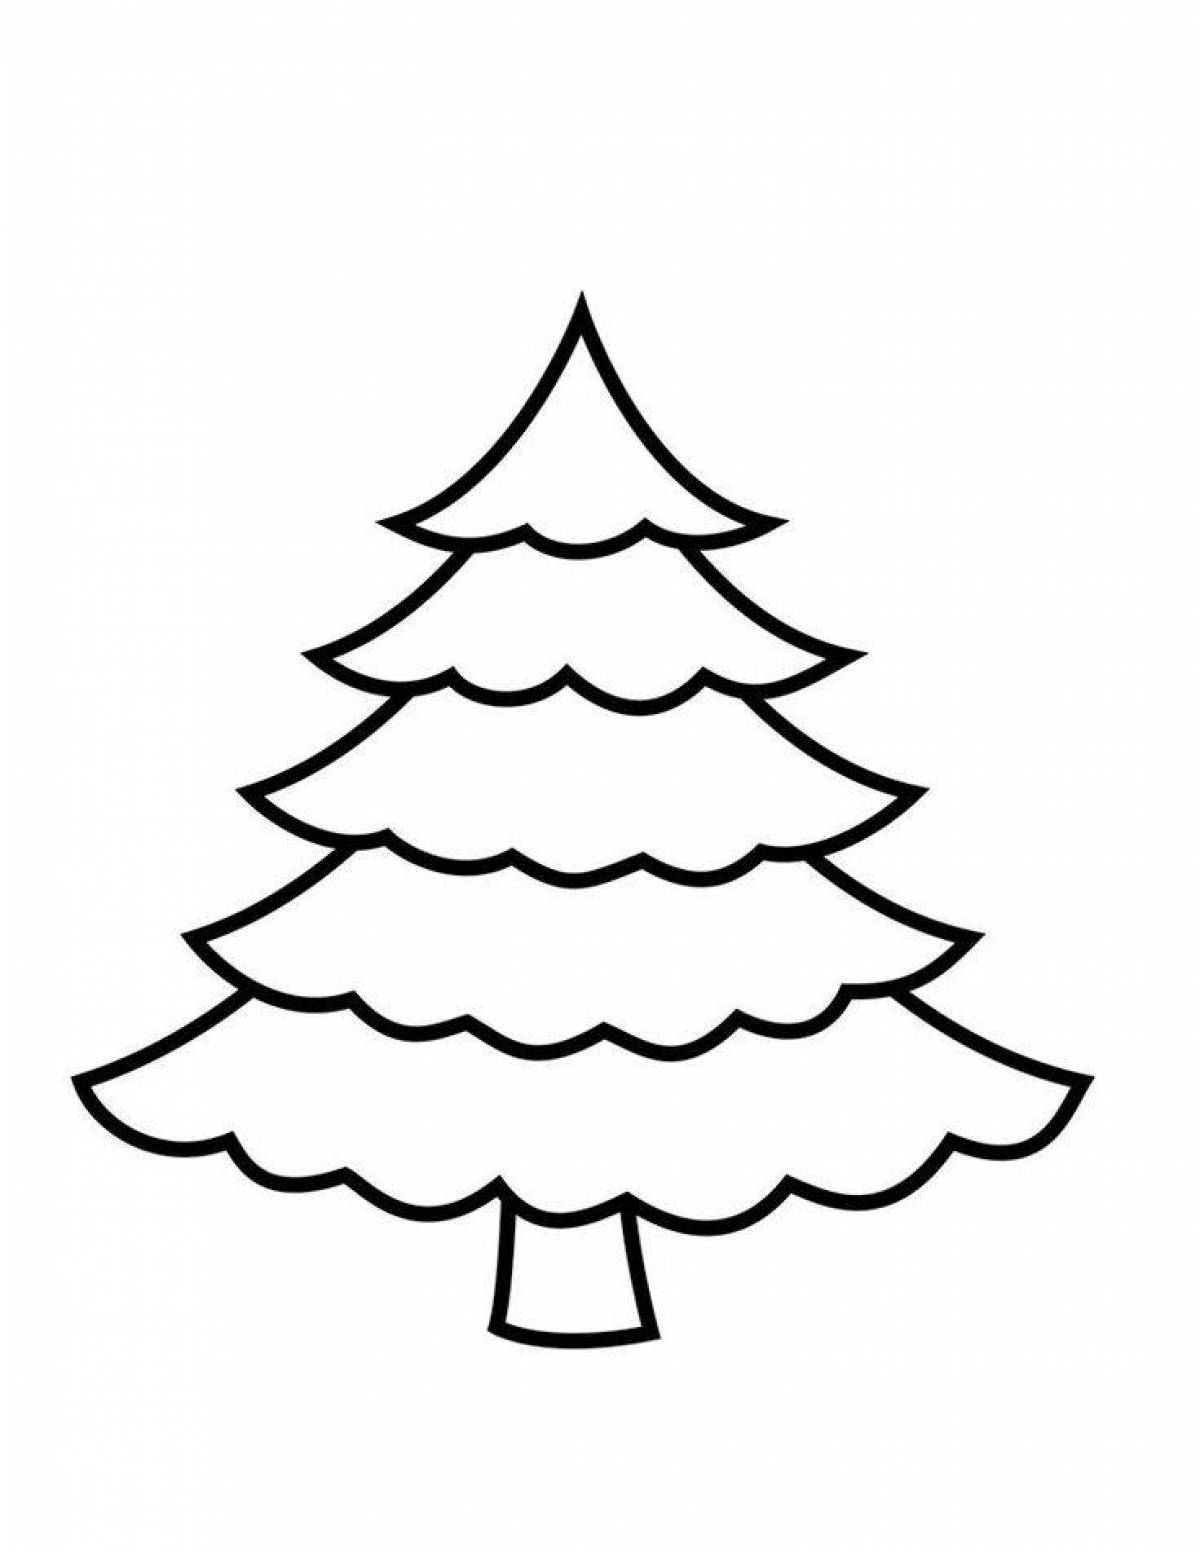 Раскраска яркая новогодняя елка для детей 3-4 лет